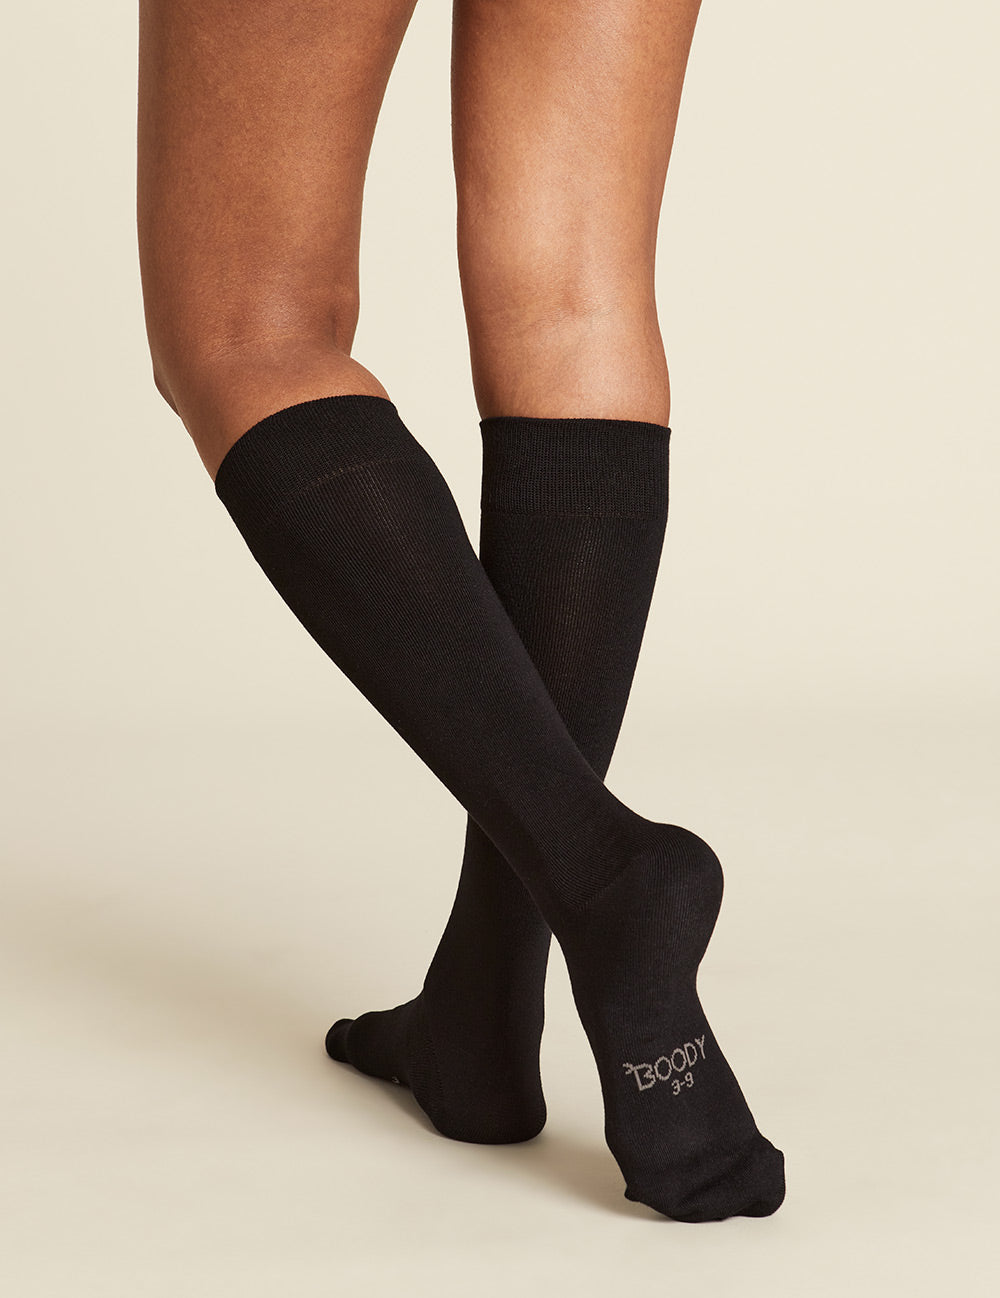 Women_s-Everyday-Knee-High-Socks-Black-Back.jpg